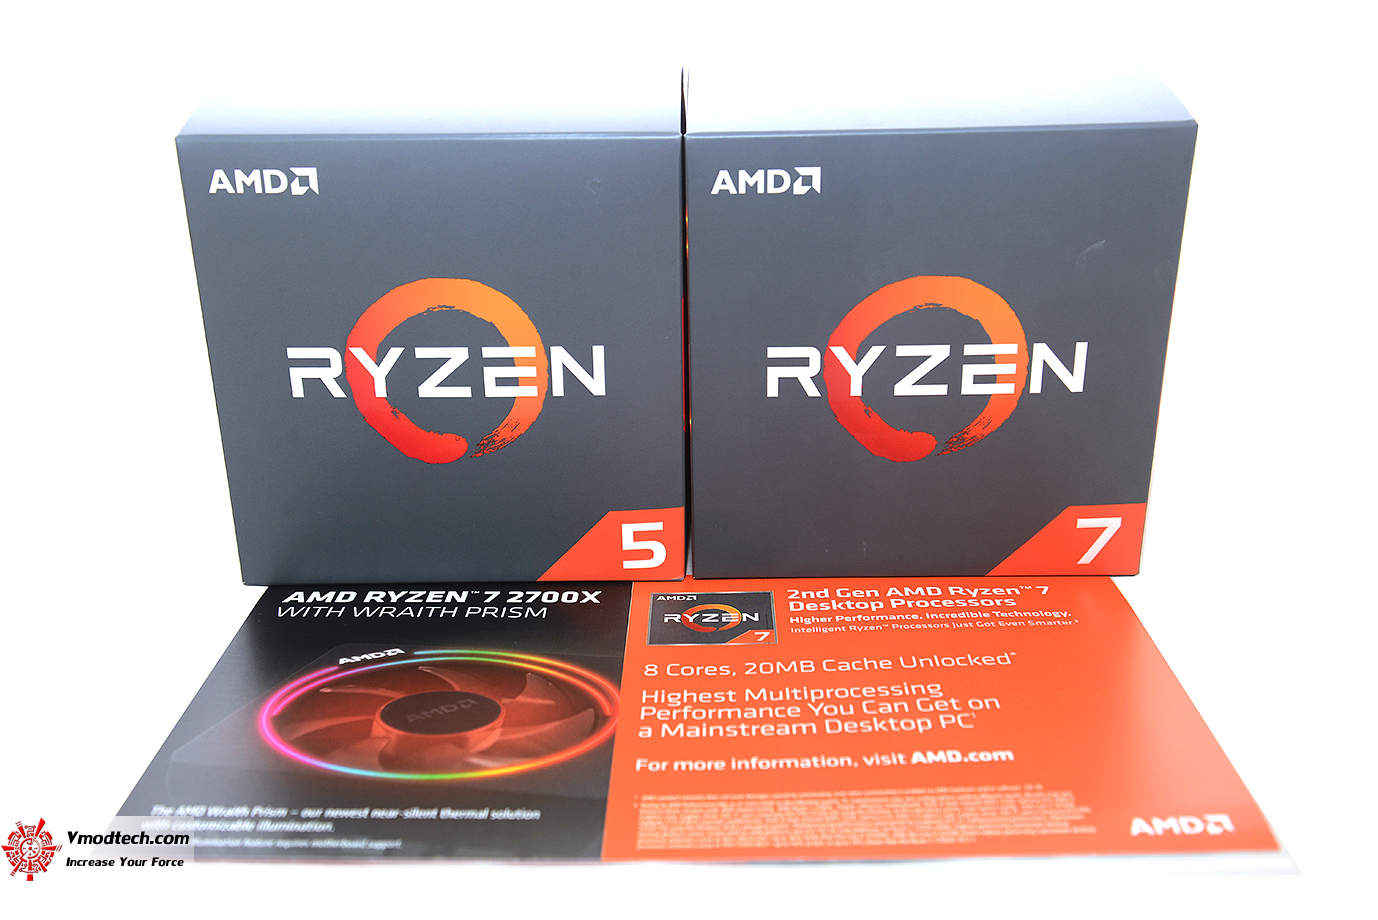 dsc 0944 AMD RYZEN 5 2600X PROCESSOR REVIEW